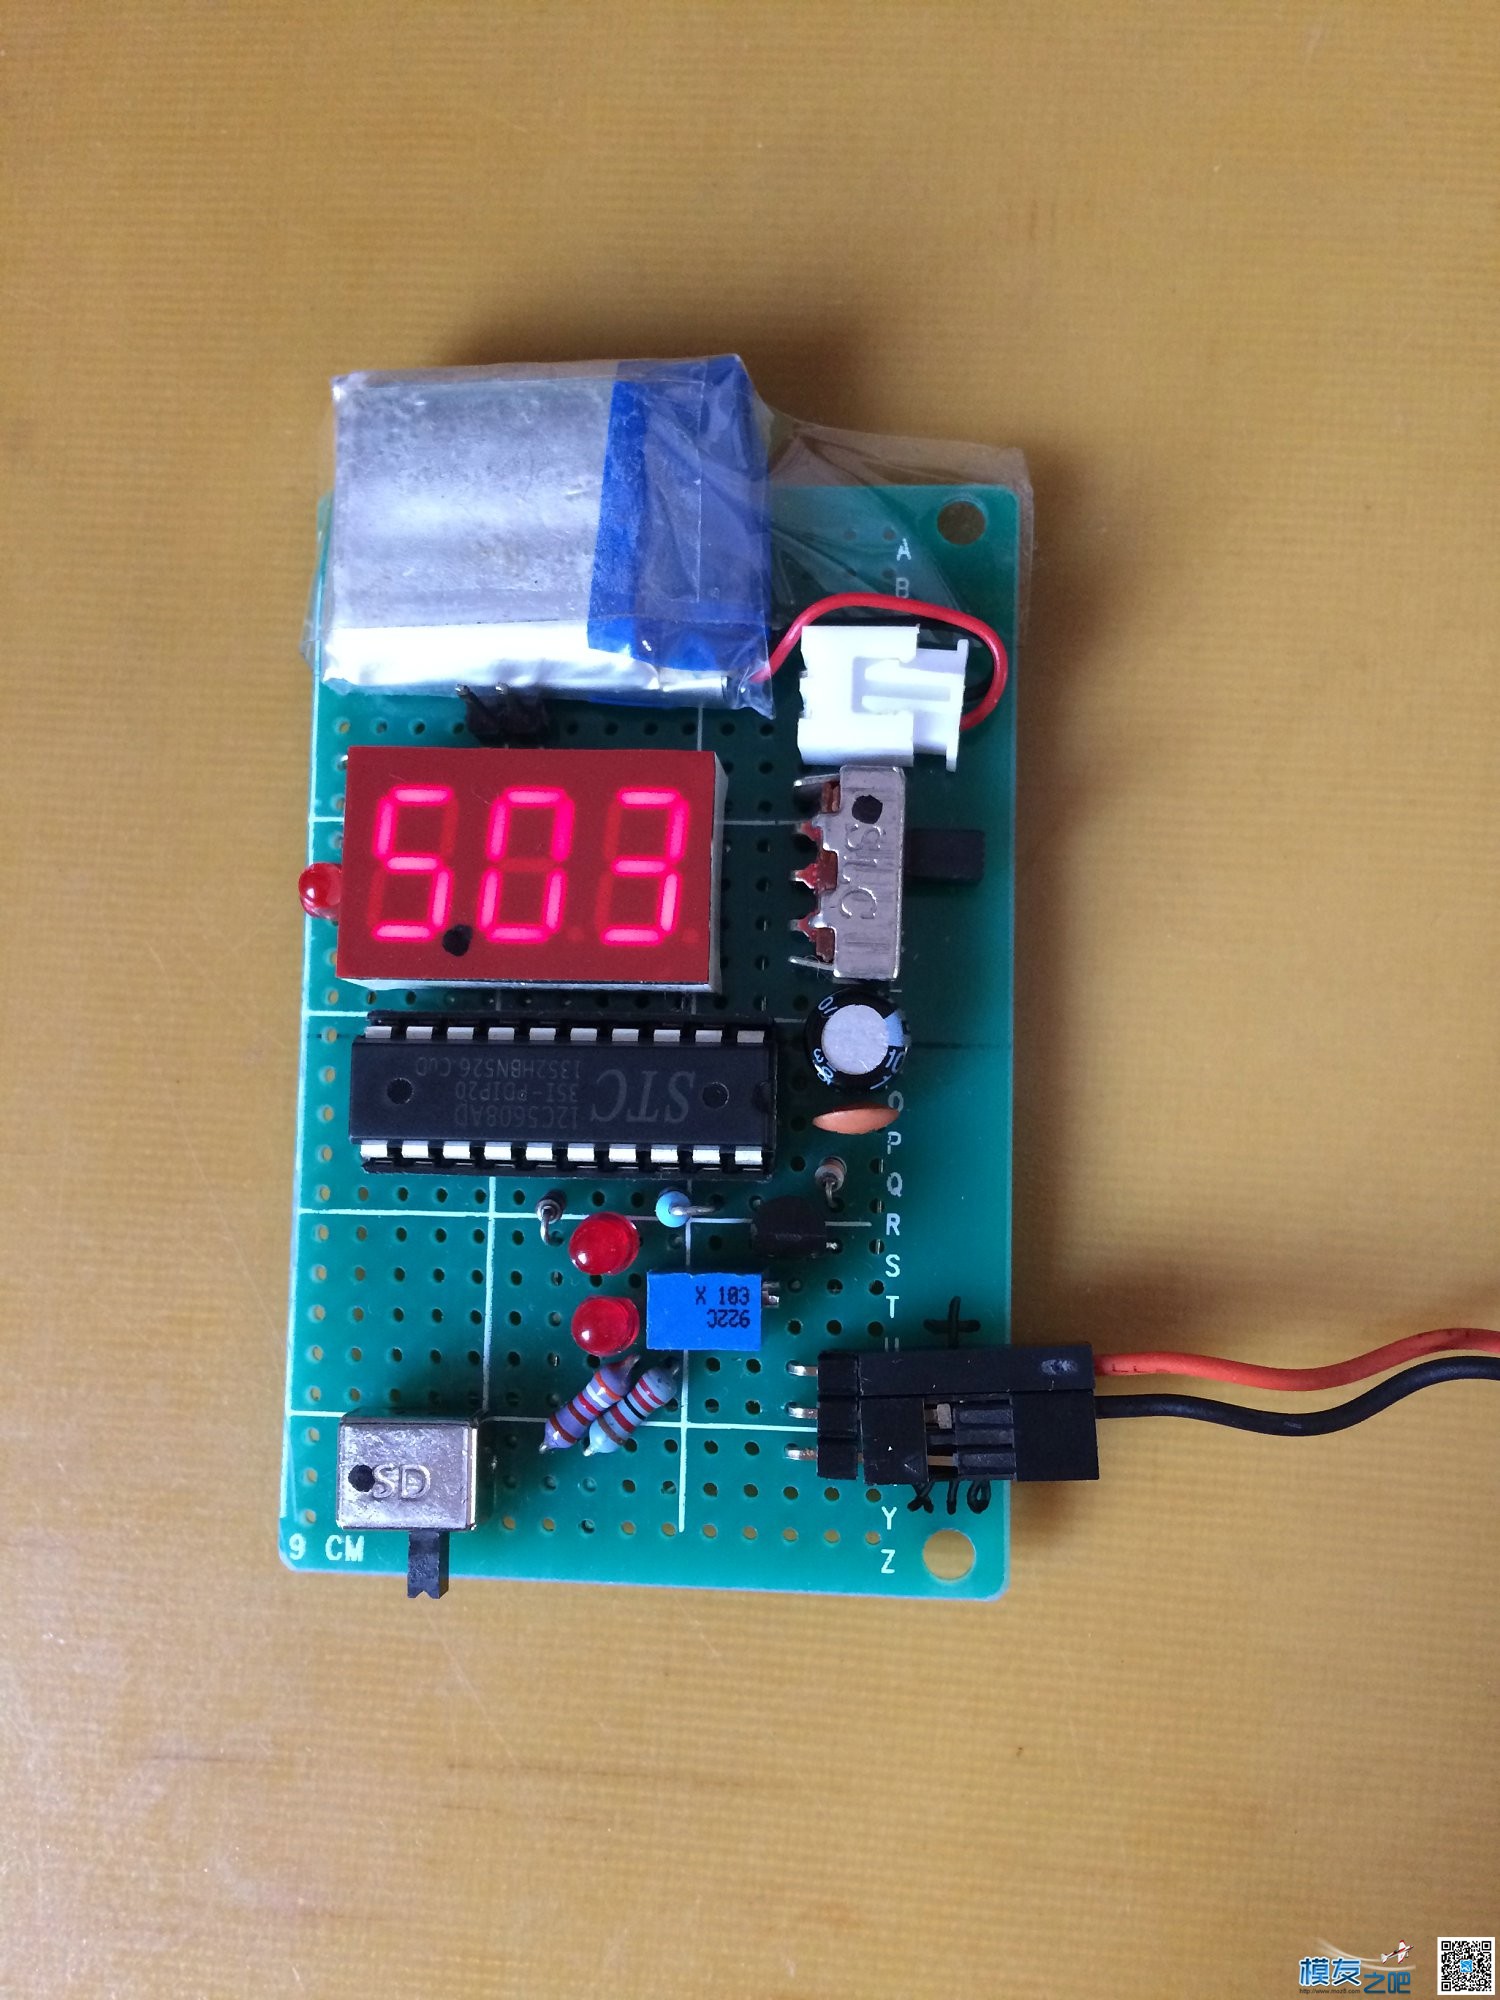 自制正负量程电压表,问题及解决。 电压表 作者:长寿烙铁 3376 